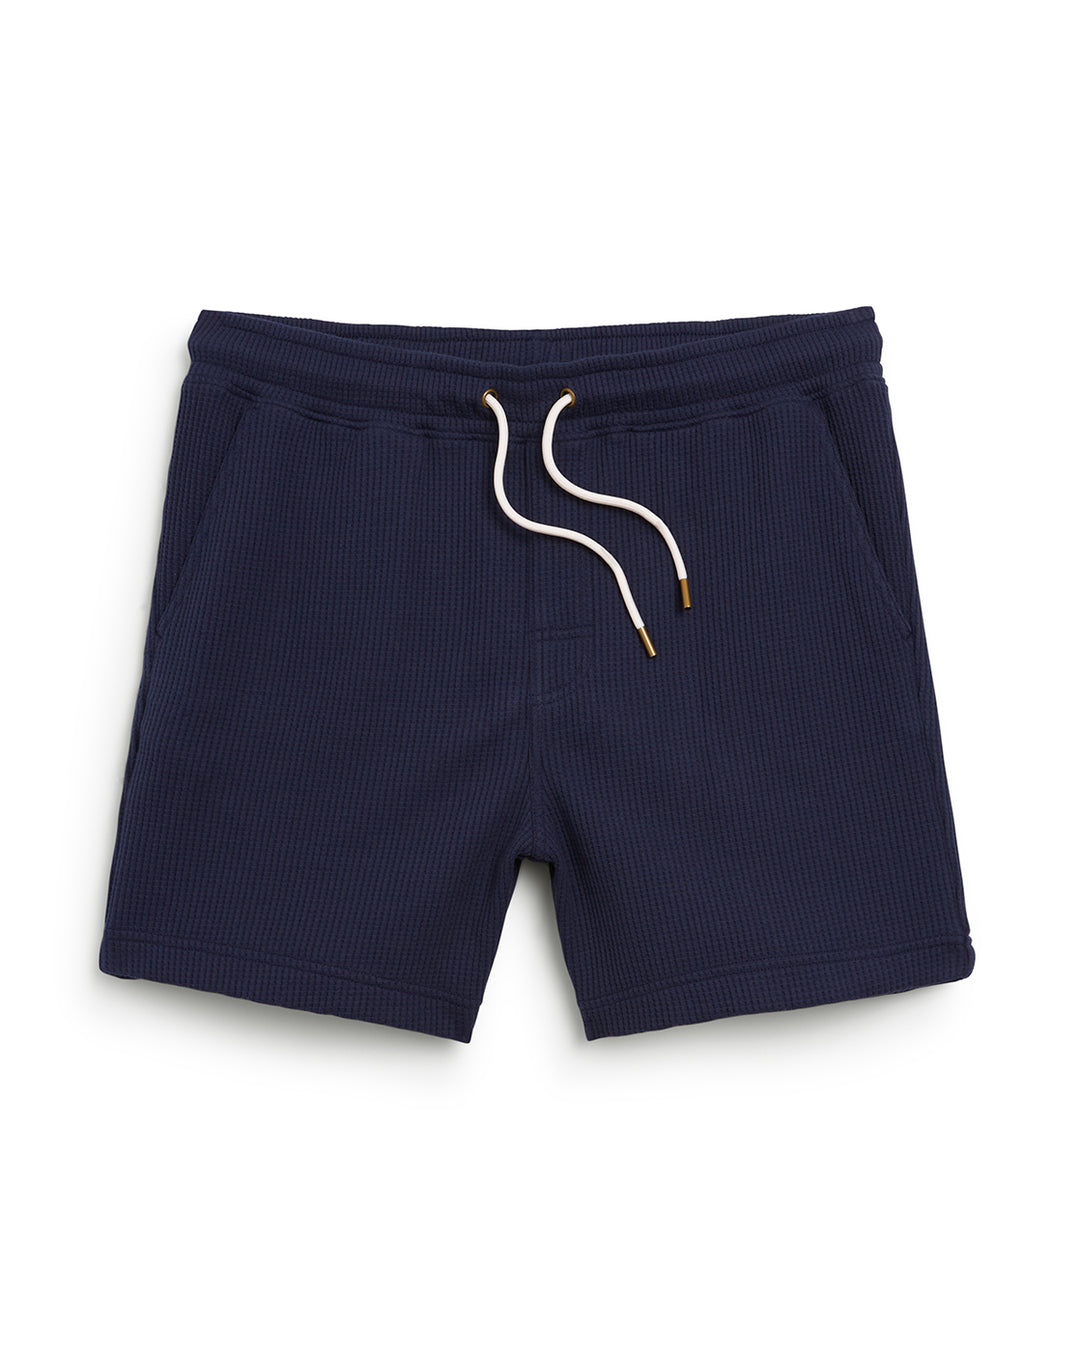 White Waffle Knit Beach Shorts, Swimwear